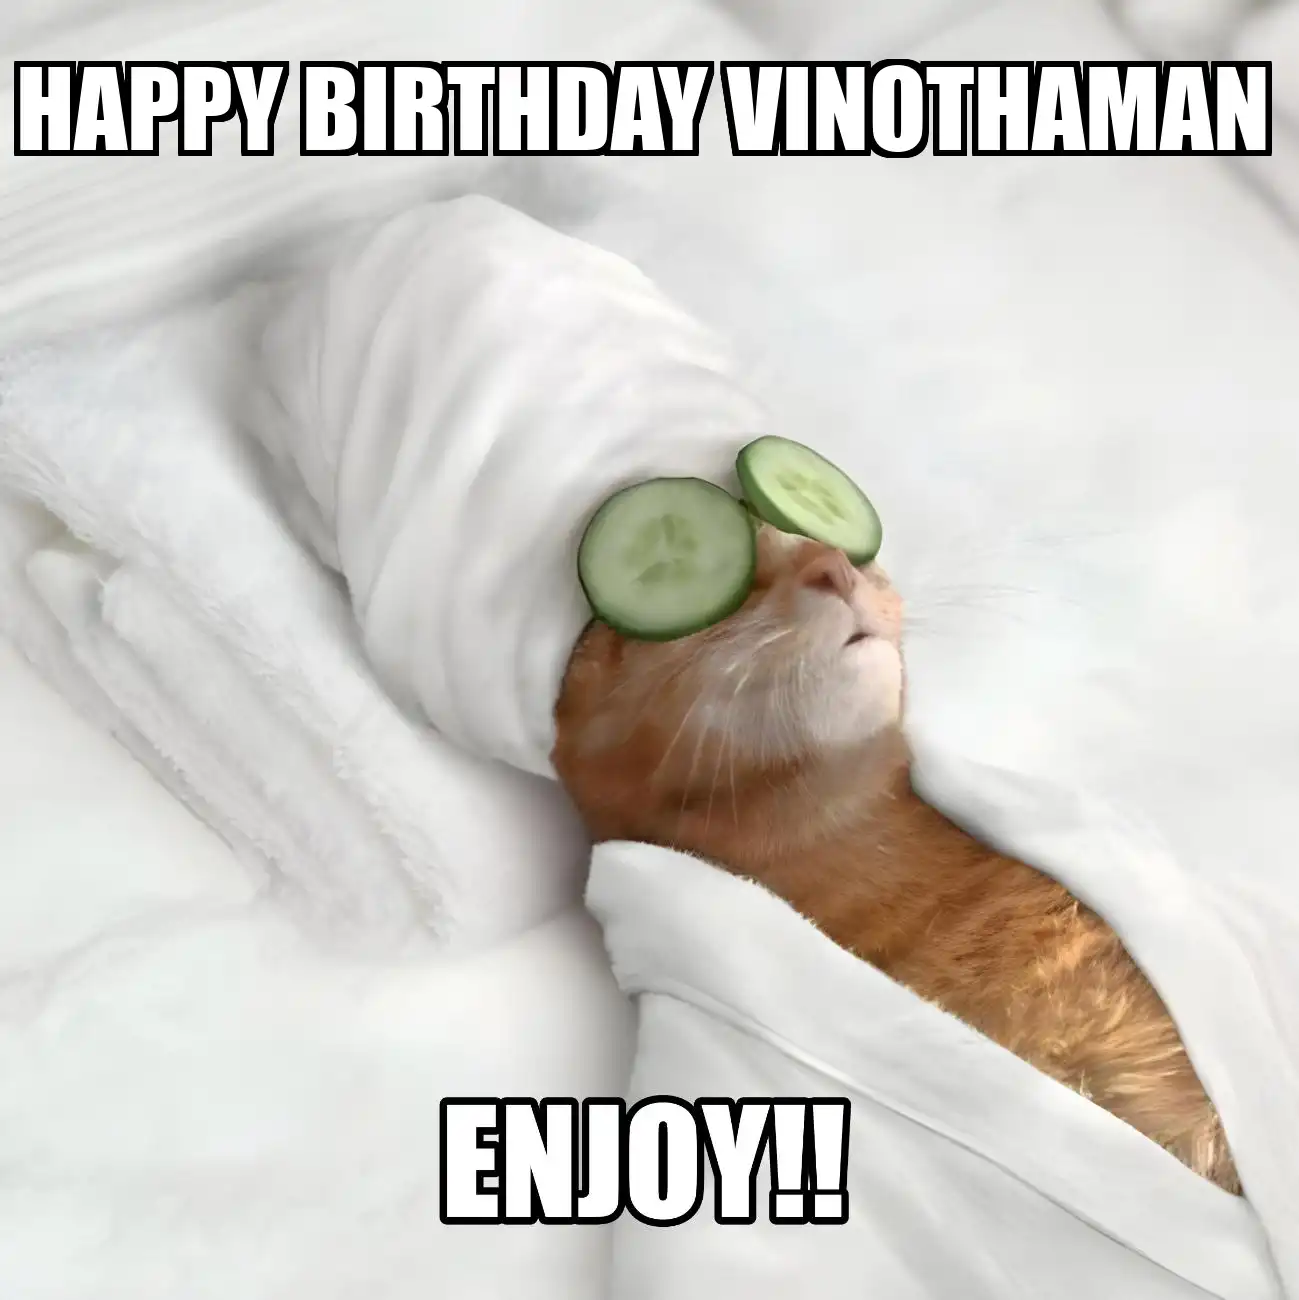 Happy Birthday Vinothaman Enjoy Cat Meme